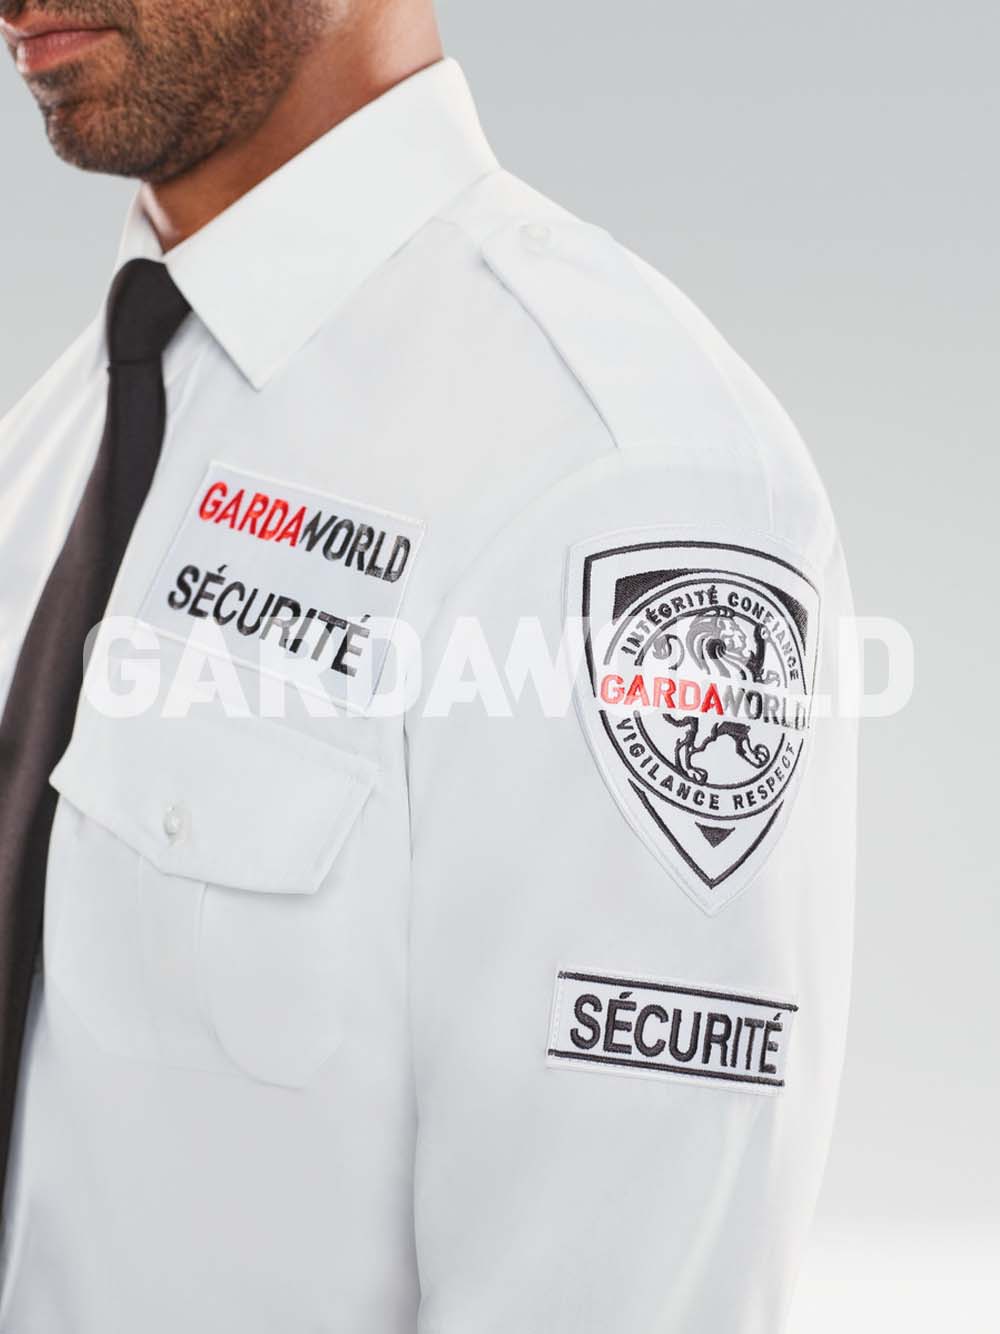 Uniforme d’agents des Services de Sécurité, focus sur le sceau GardaWorld, fond blanc